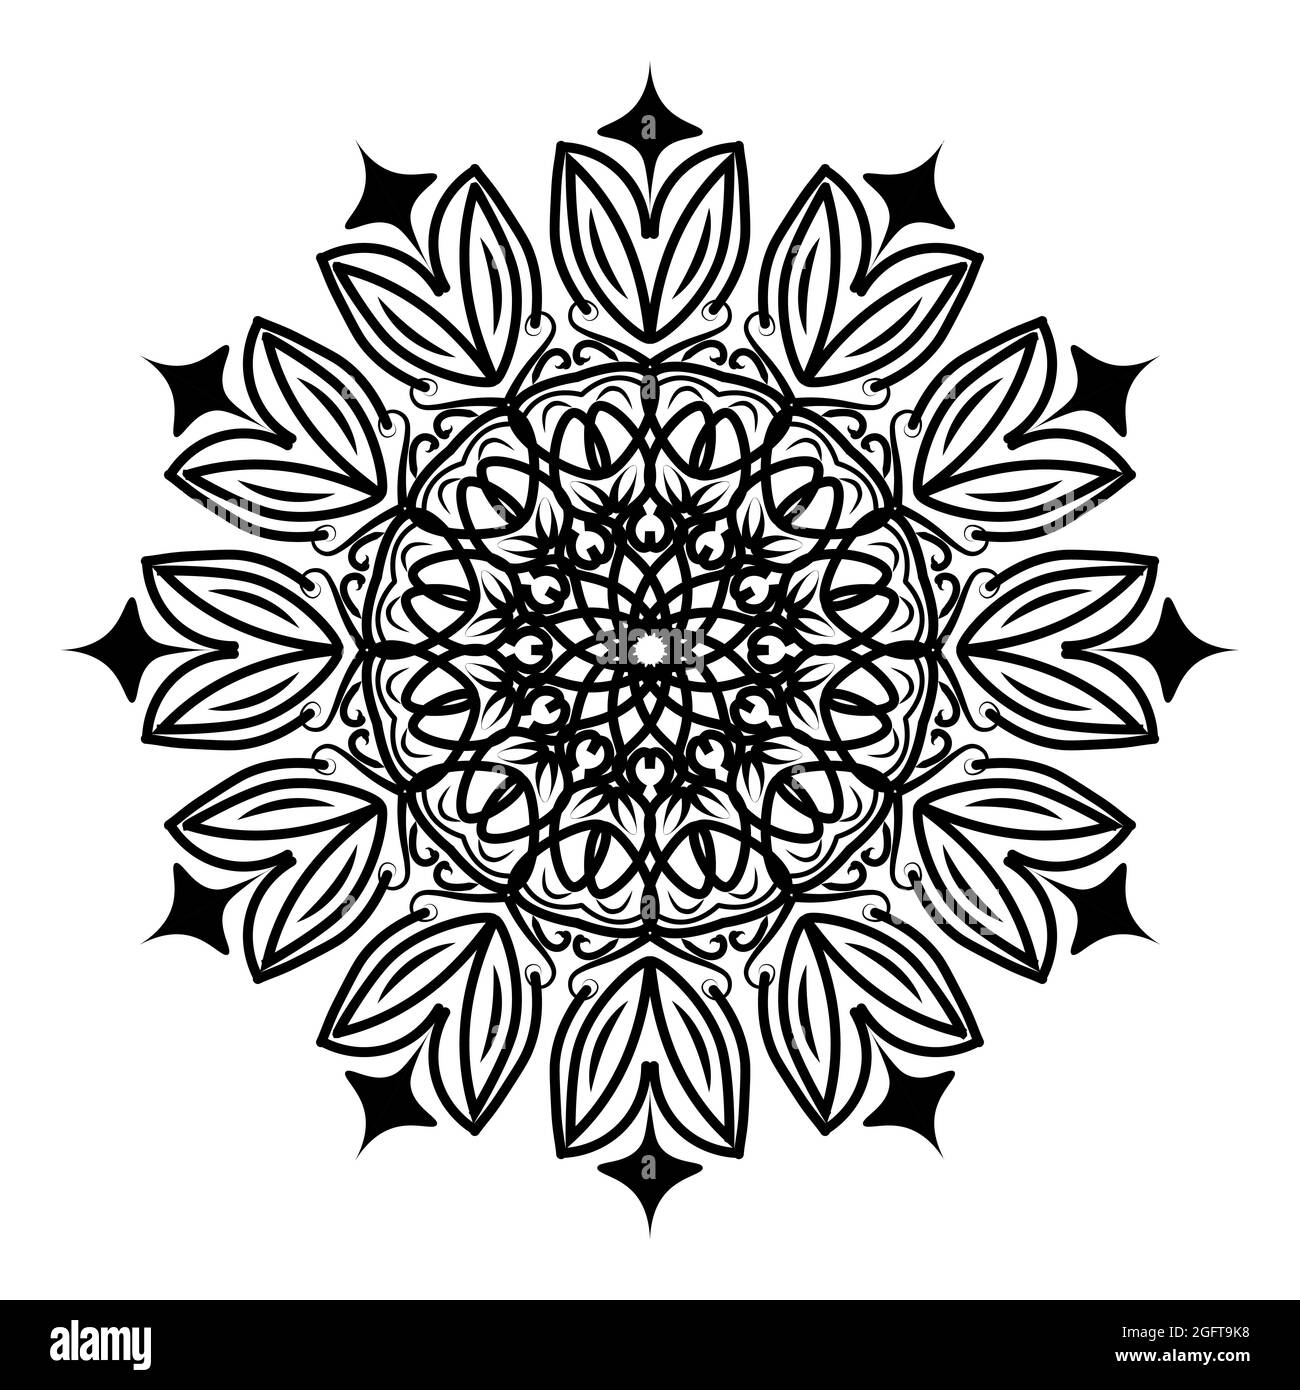 islamisches Mandala der Meditation Entspannung arabisches Blumenmuster für ramadan mubarak traditionelle muslimische Feier Hintergrund Stock Vektor